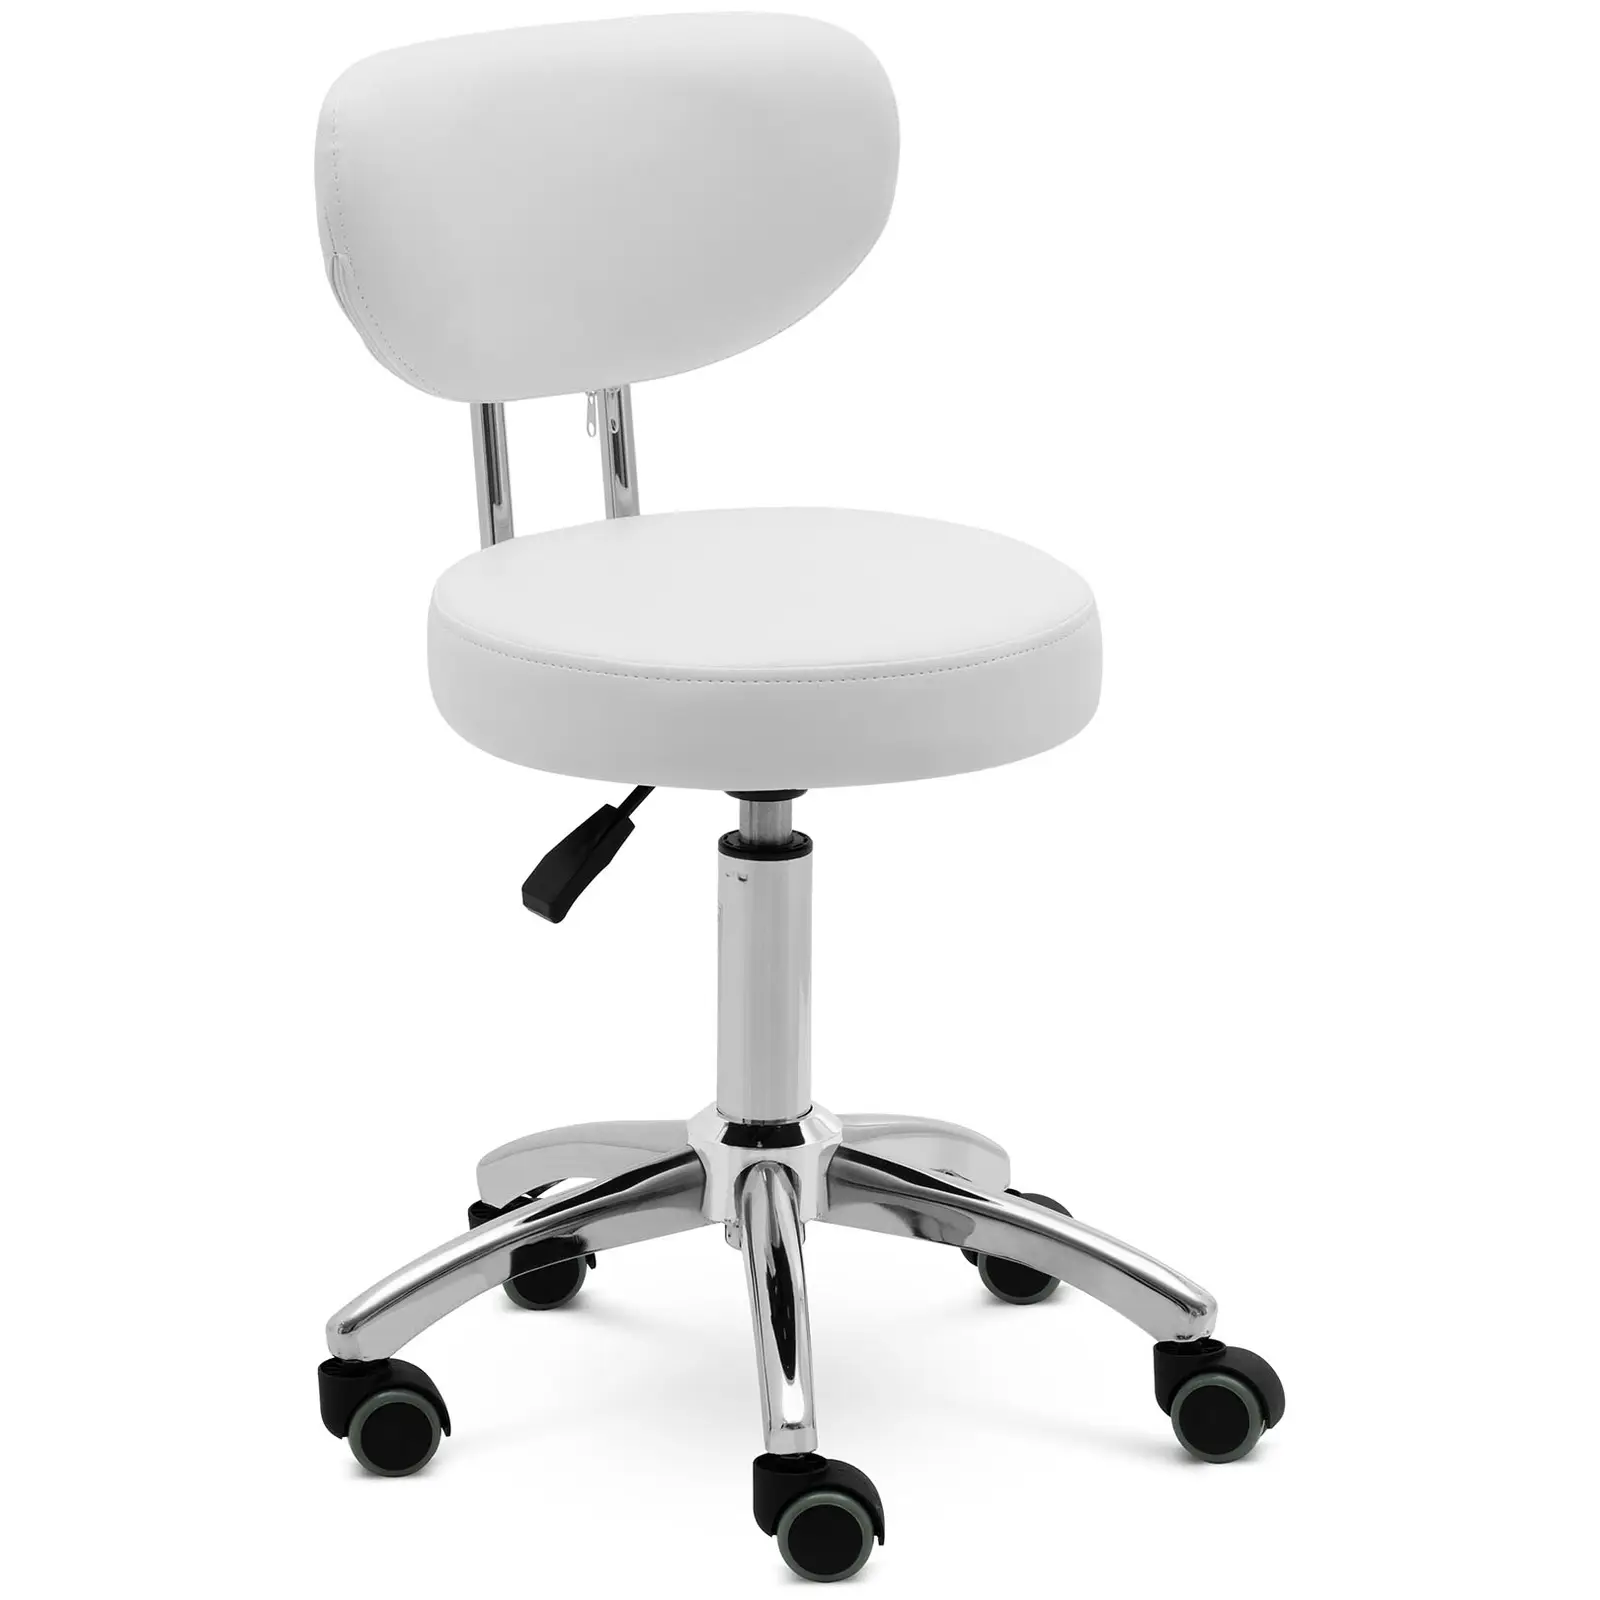 Roller stool with backrest - 46 - 60 cm - 150 kg - white